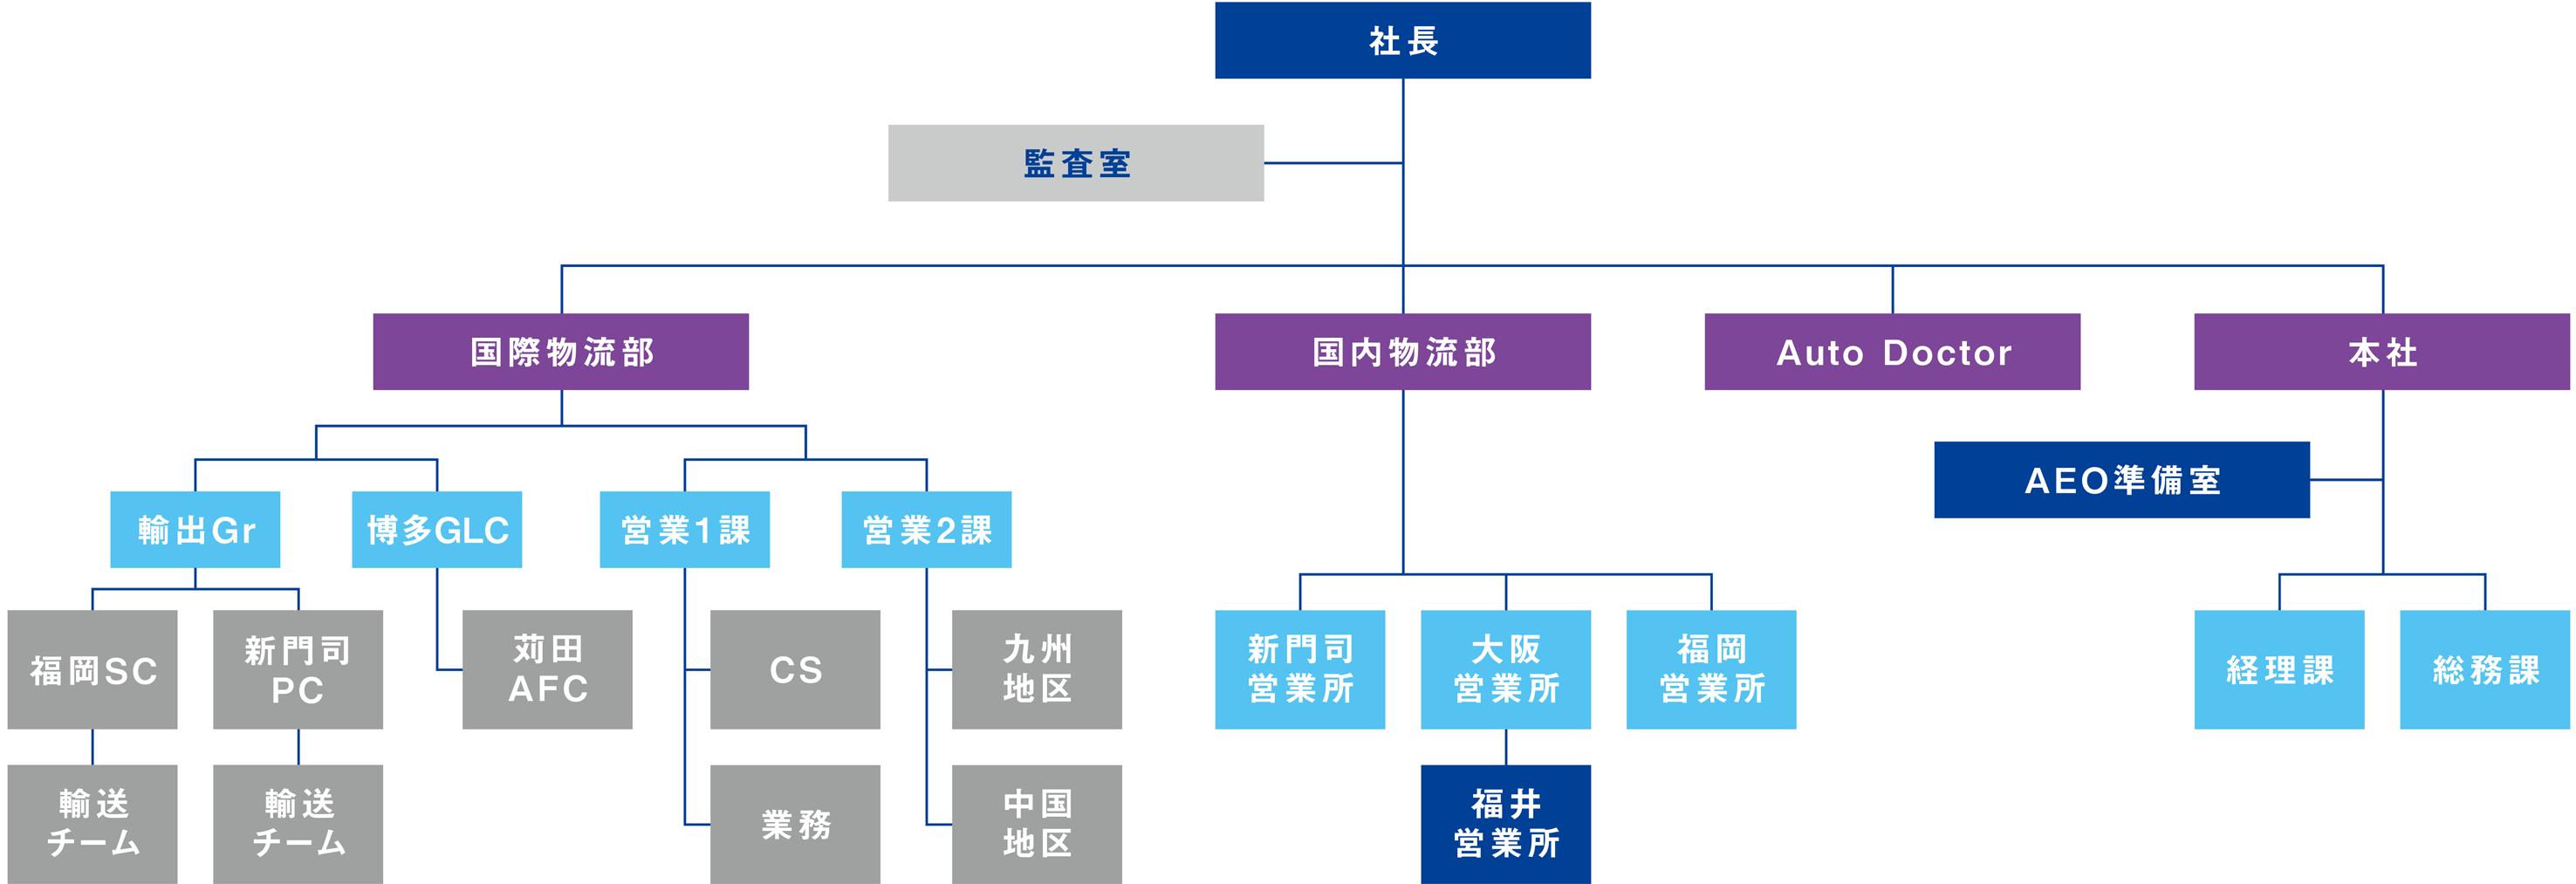 福岡トランス株式会社 組織図